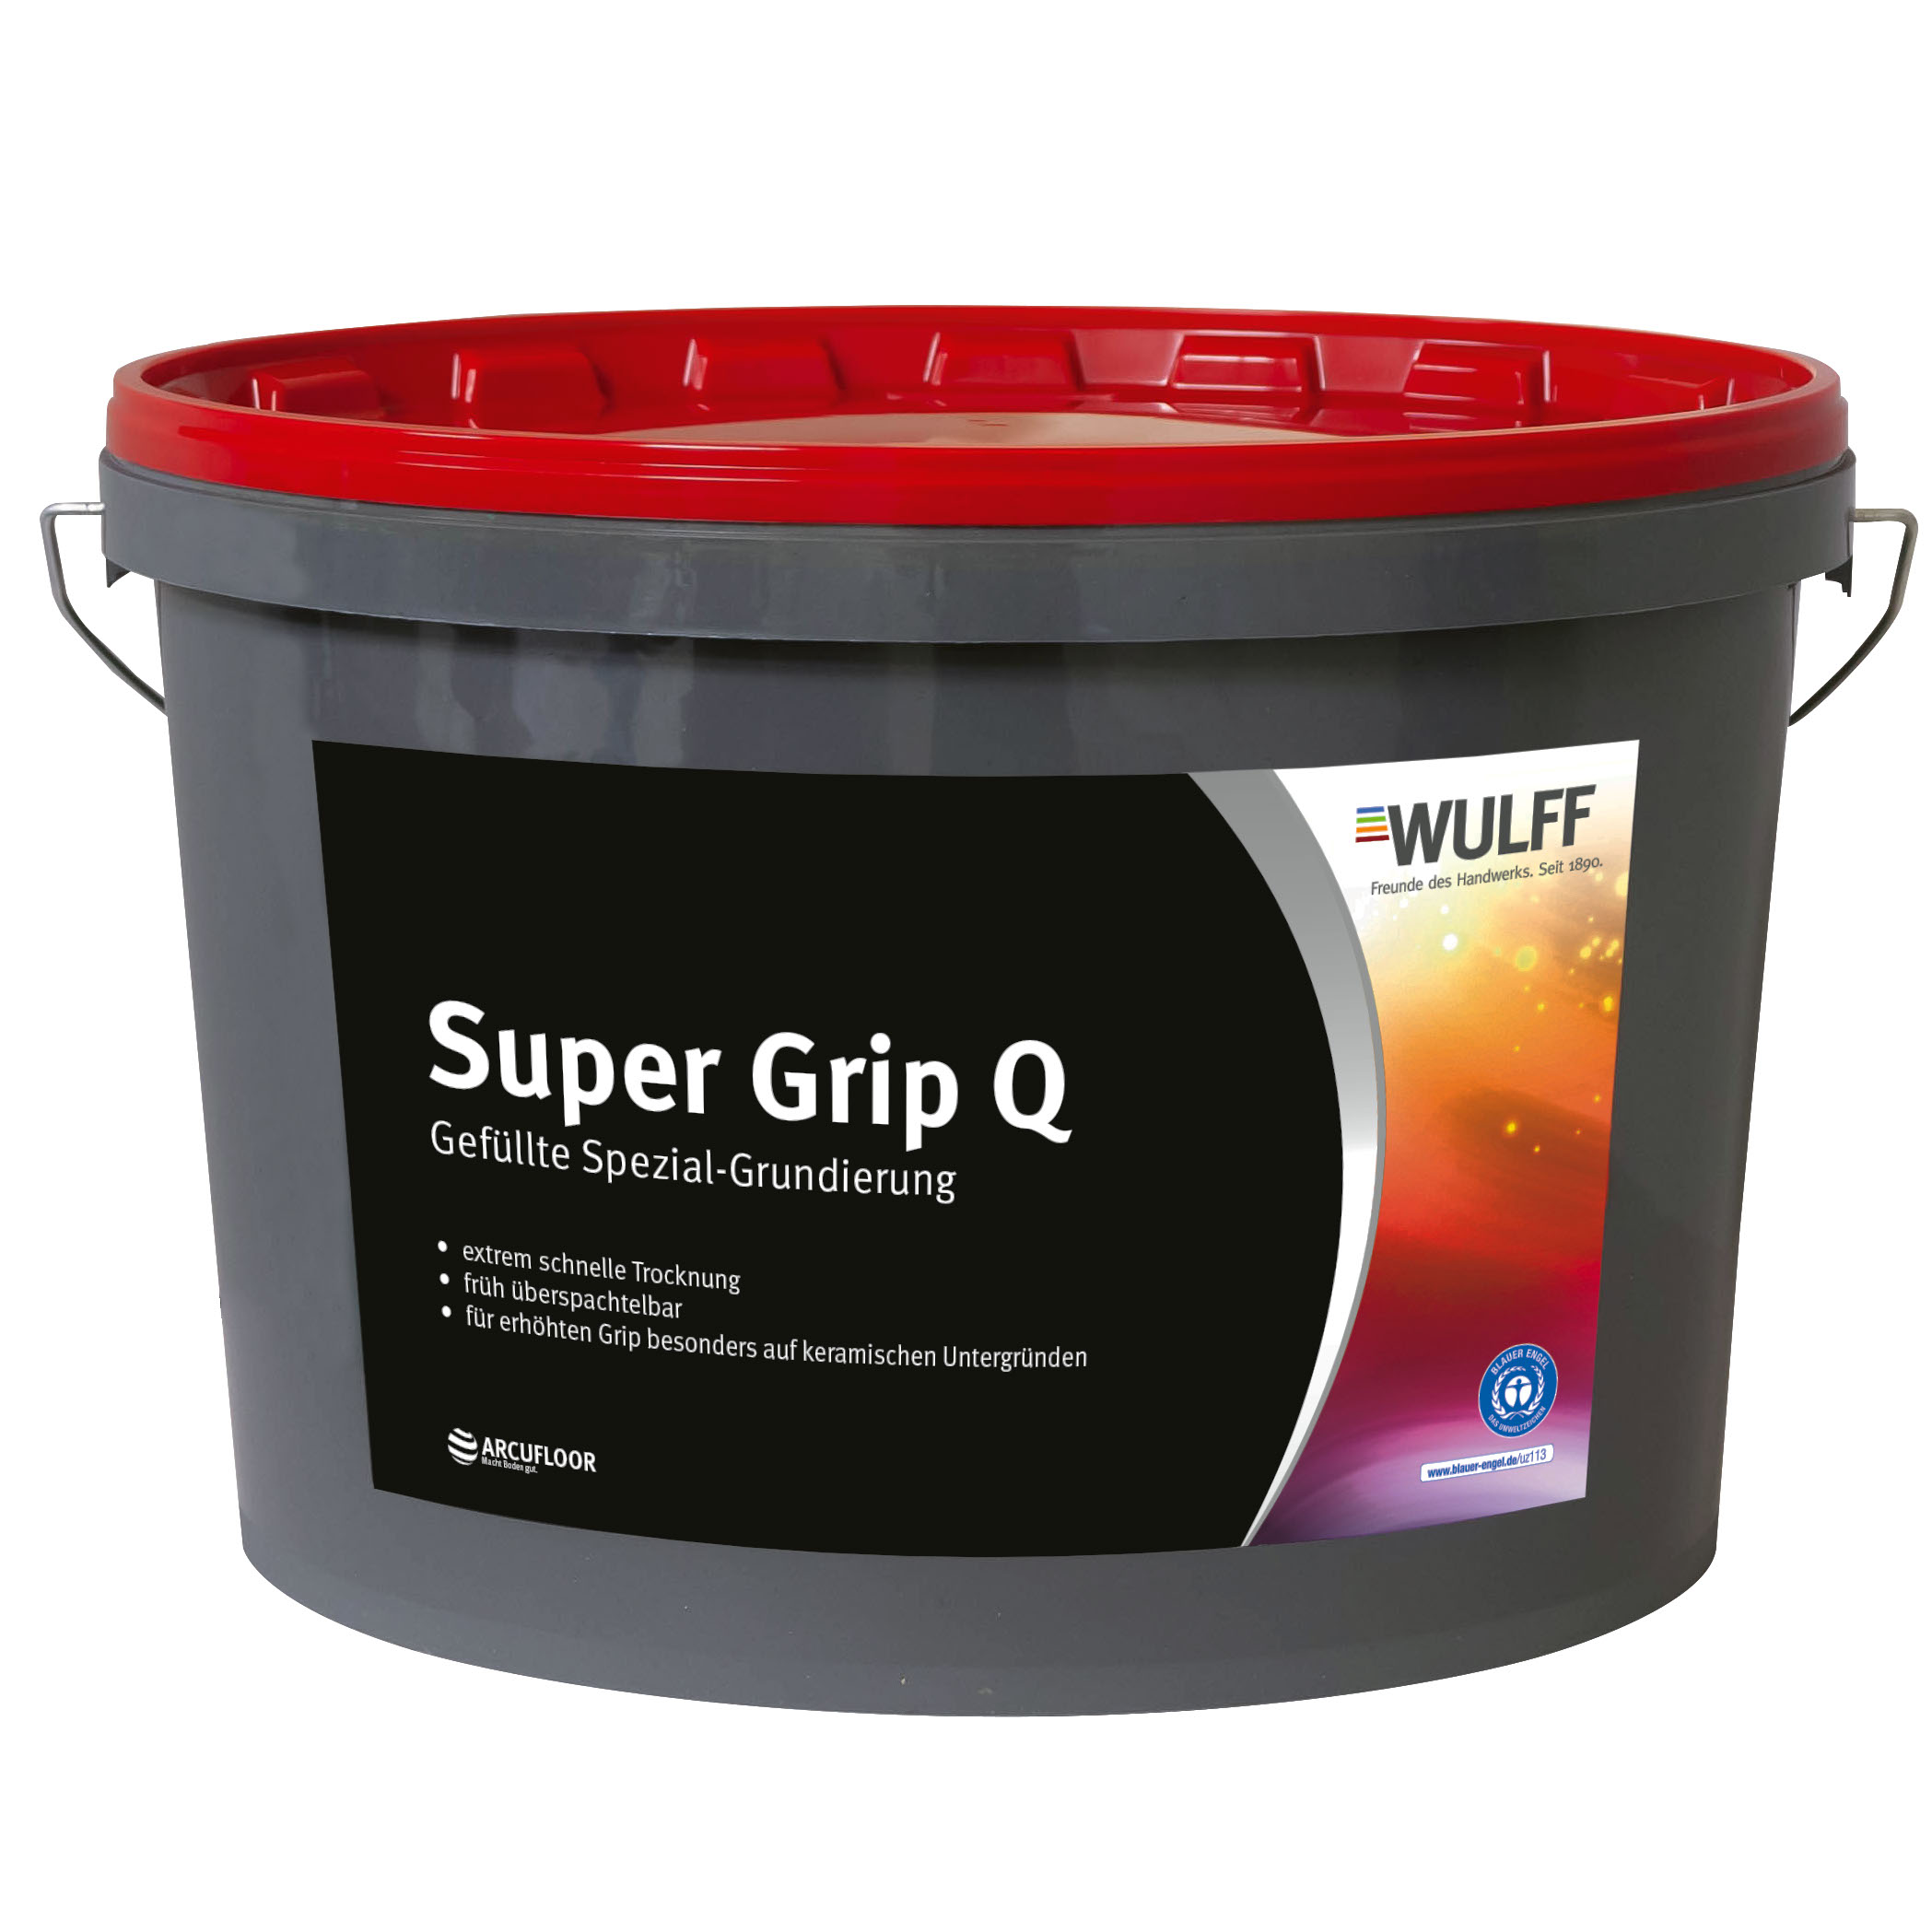 Super Grip Q